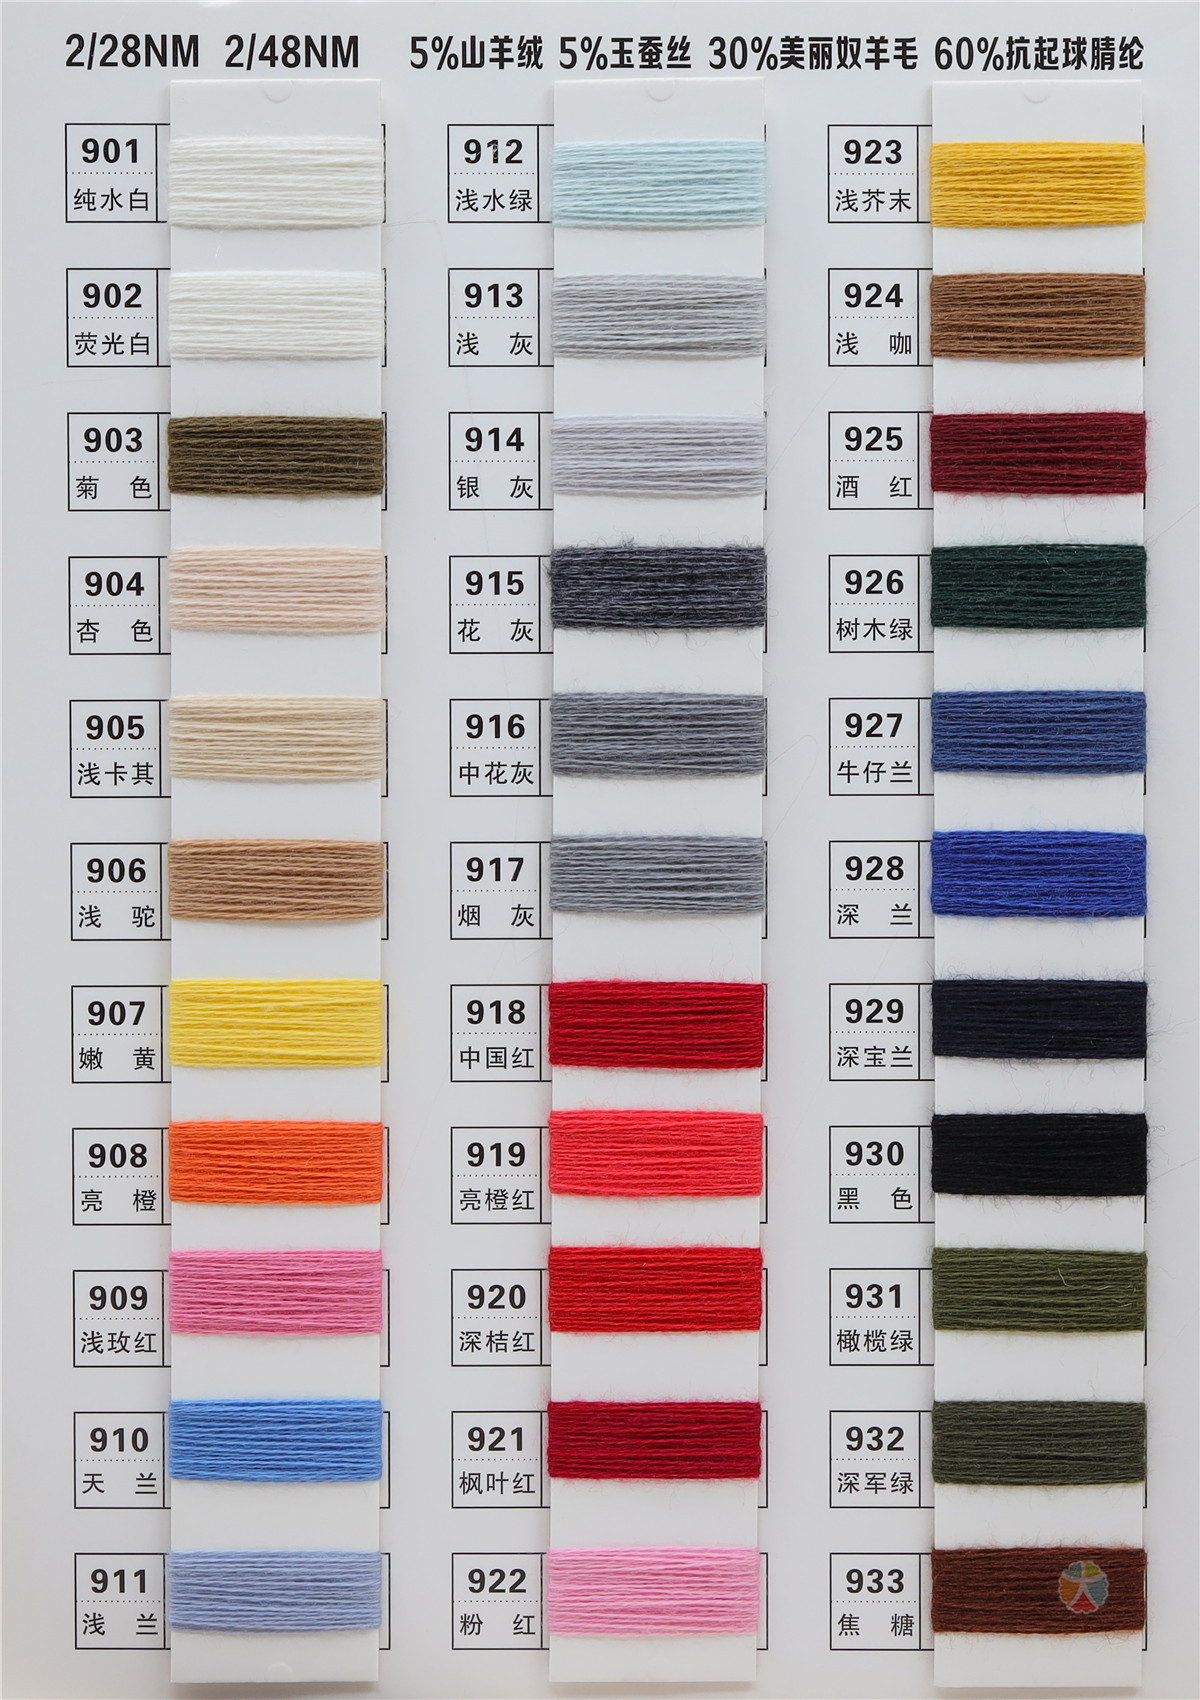 3/60NM 40jade silk 25anti-pilling acrylic fiber 25bamboo fiber 10merino wool